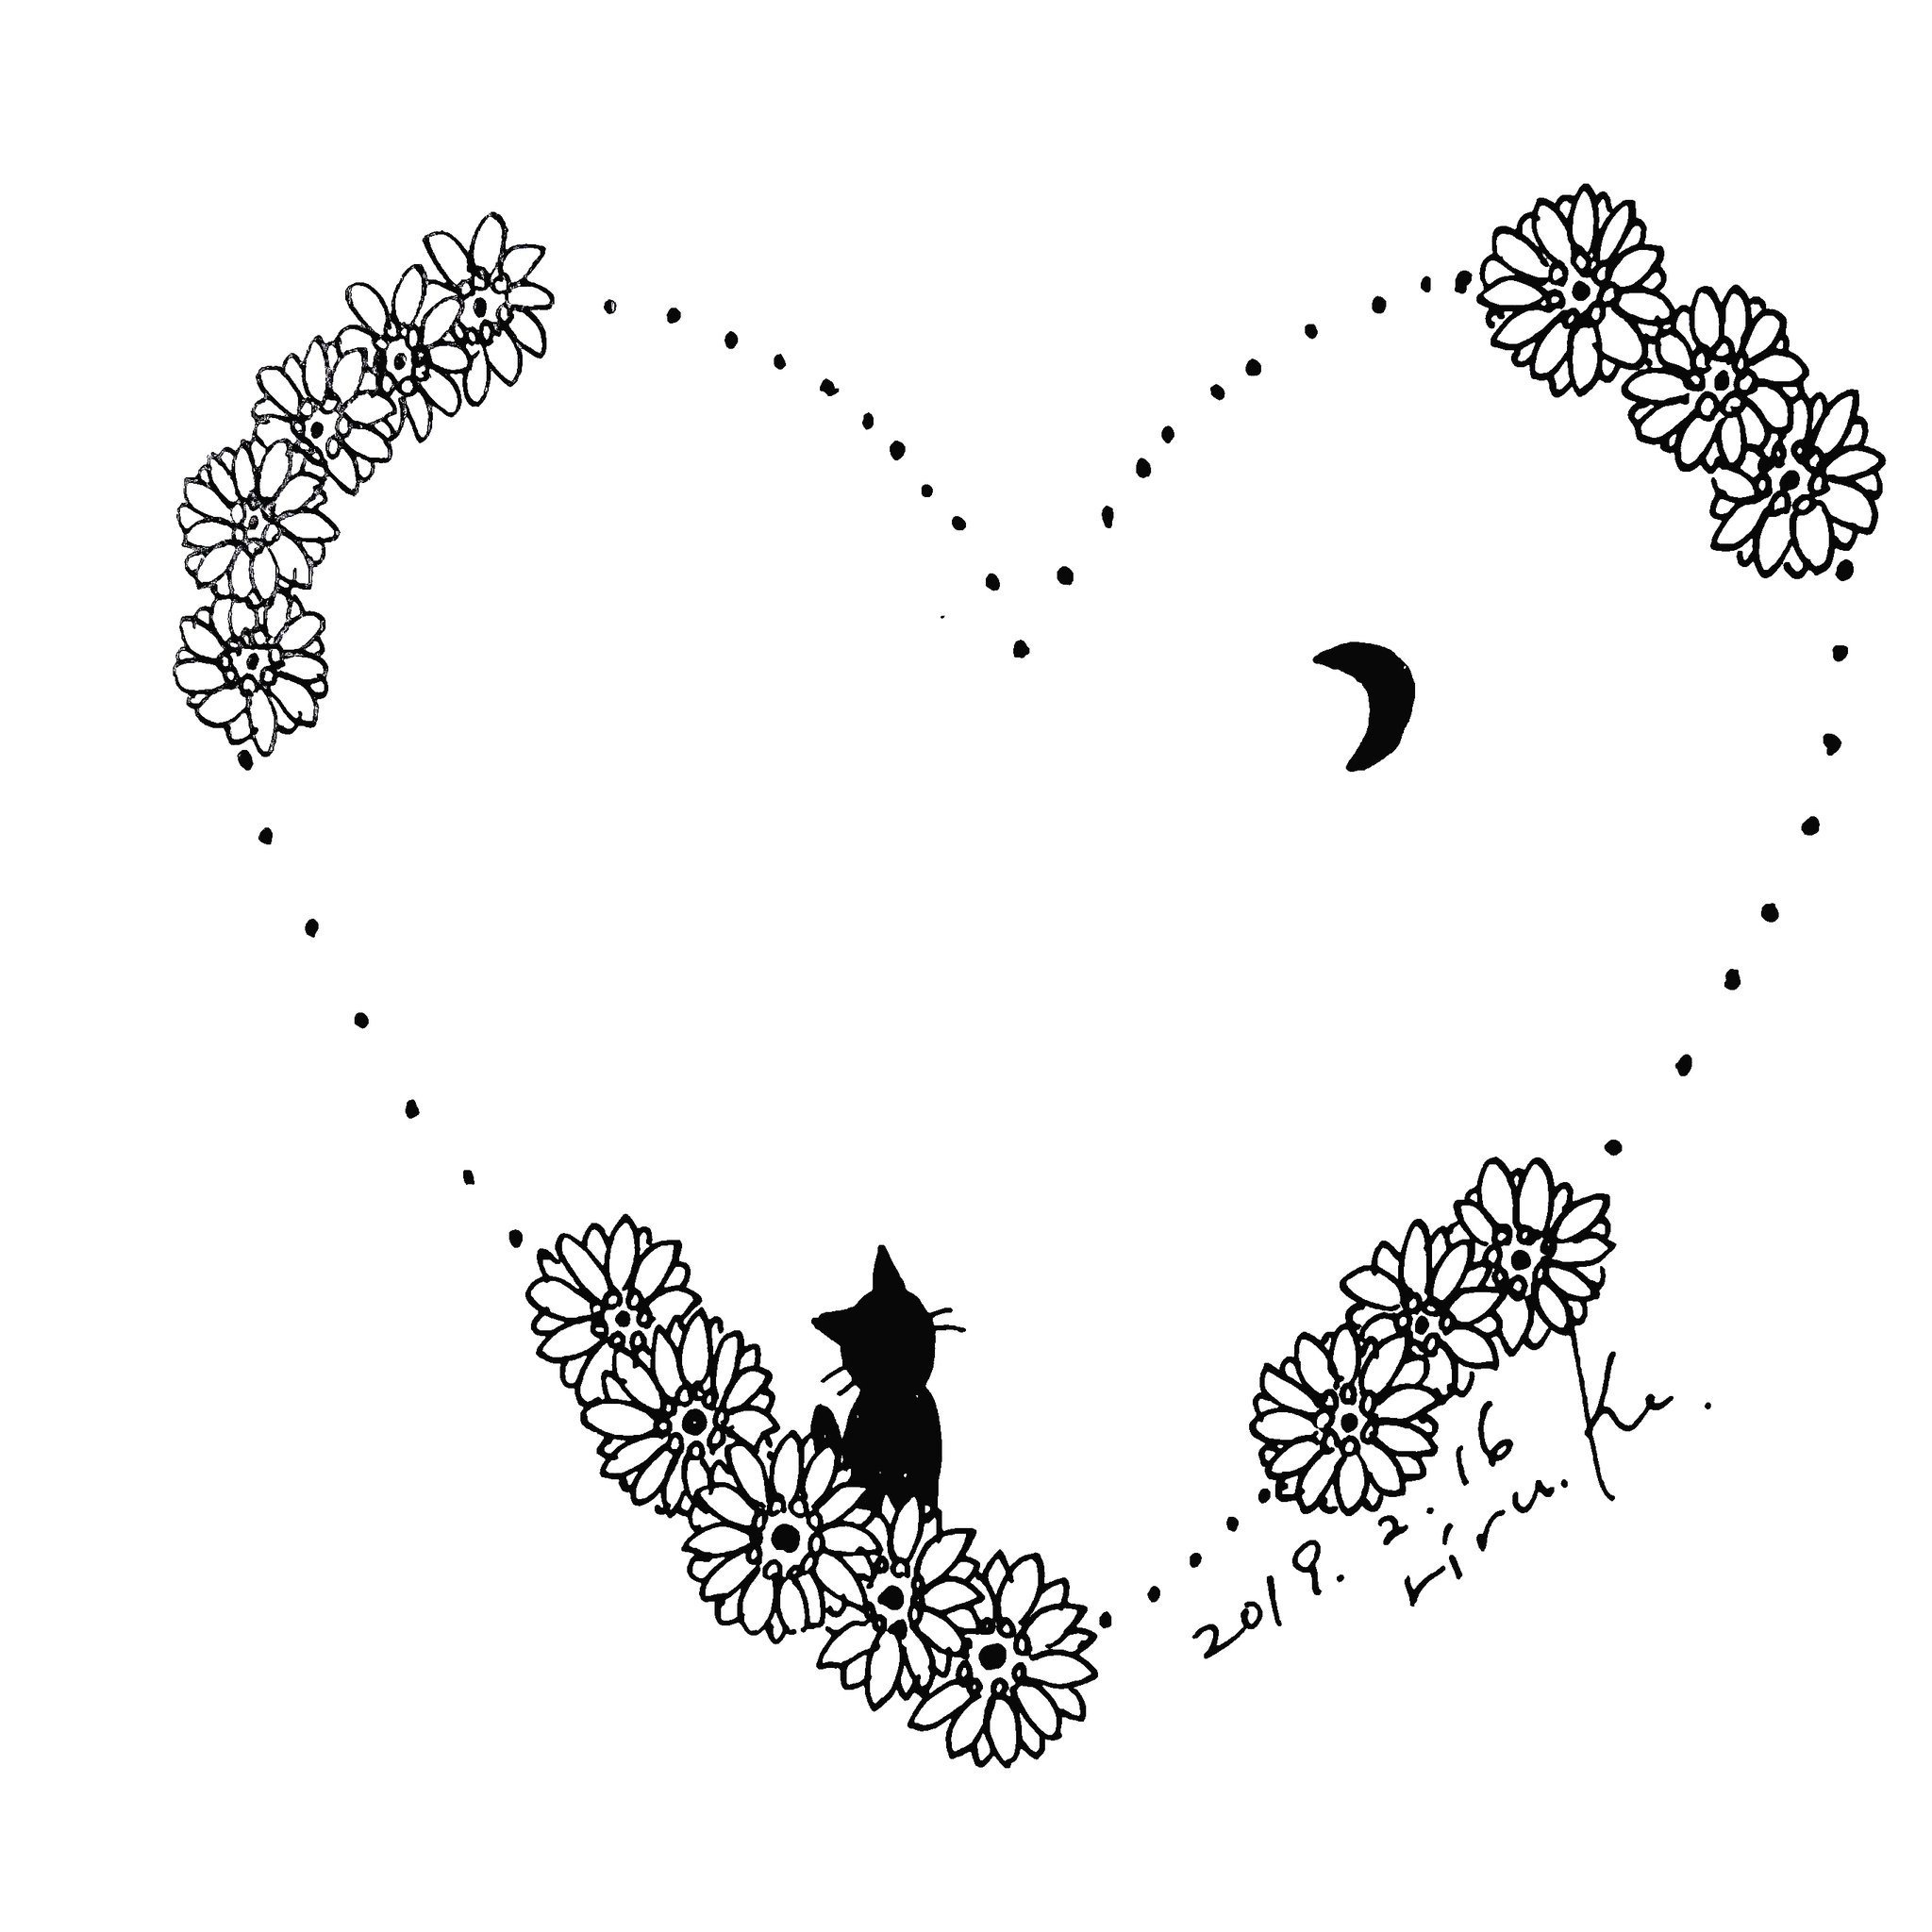 Riru K 19年2月16日 12ヶ月の花と黒猫 11月 ガーベラ イラスト 花を描く 12ヶ月の花 11月 ガーベラ Gerbera 黒猫 三日月 ハート ハートの枠 Heart Illustration T Co Xauapc2j1y Twitter